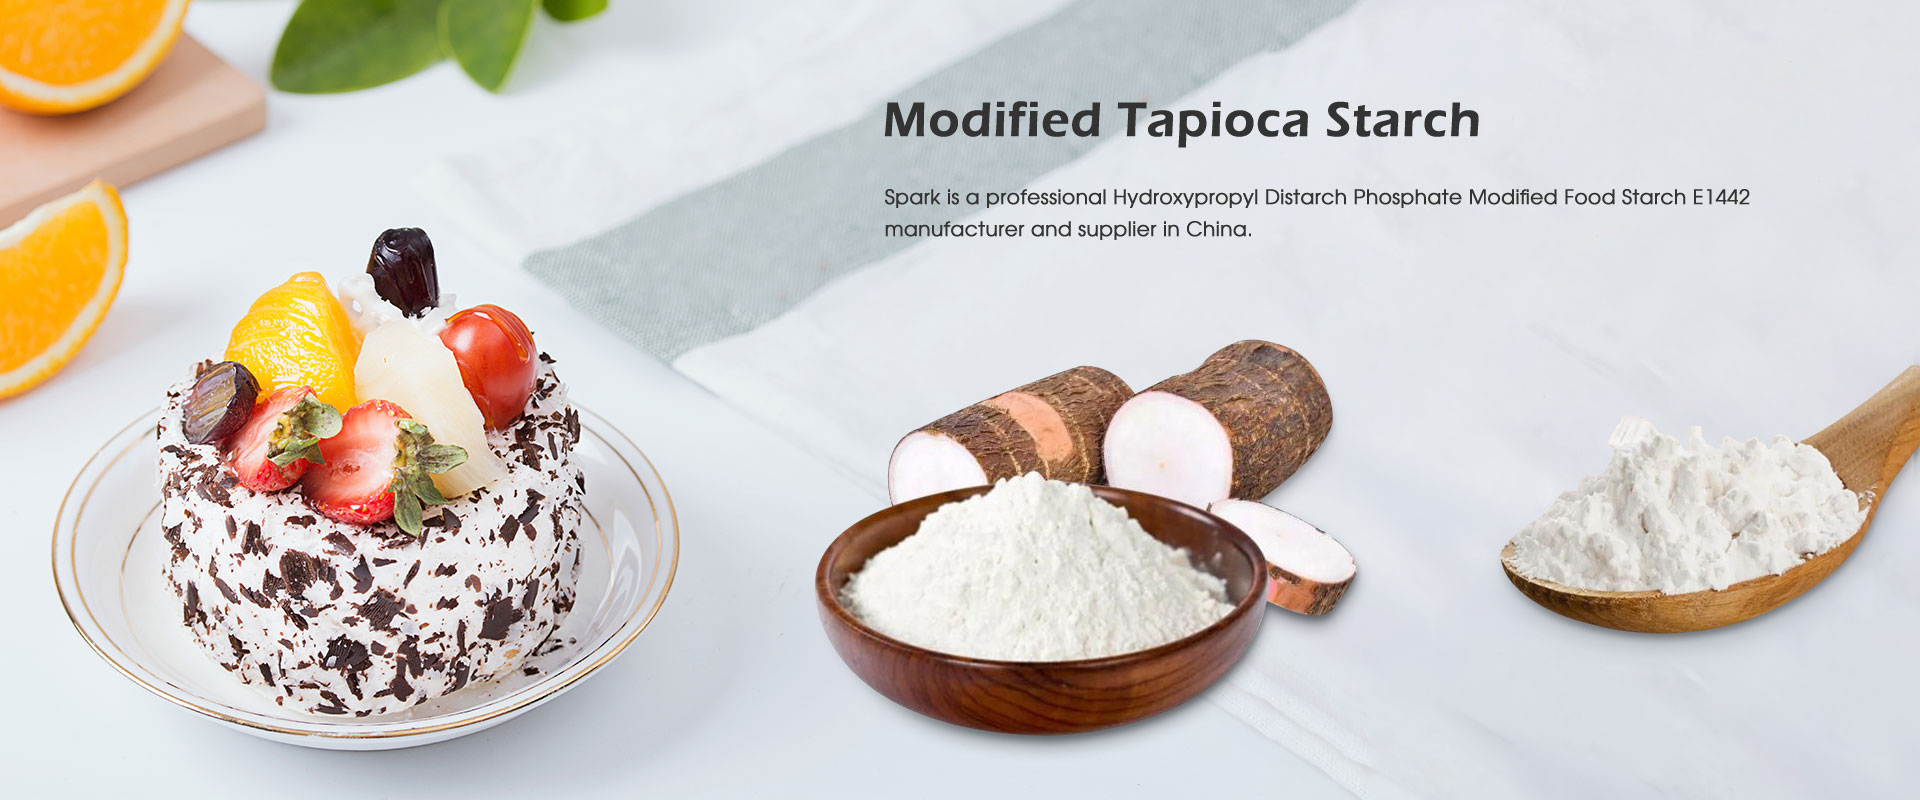 Modifierade Tapiokastärkelsetillverkare